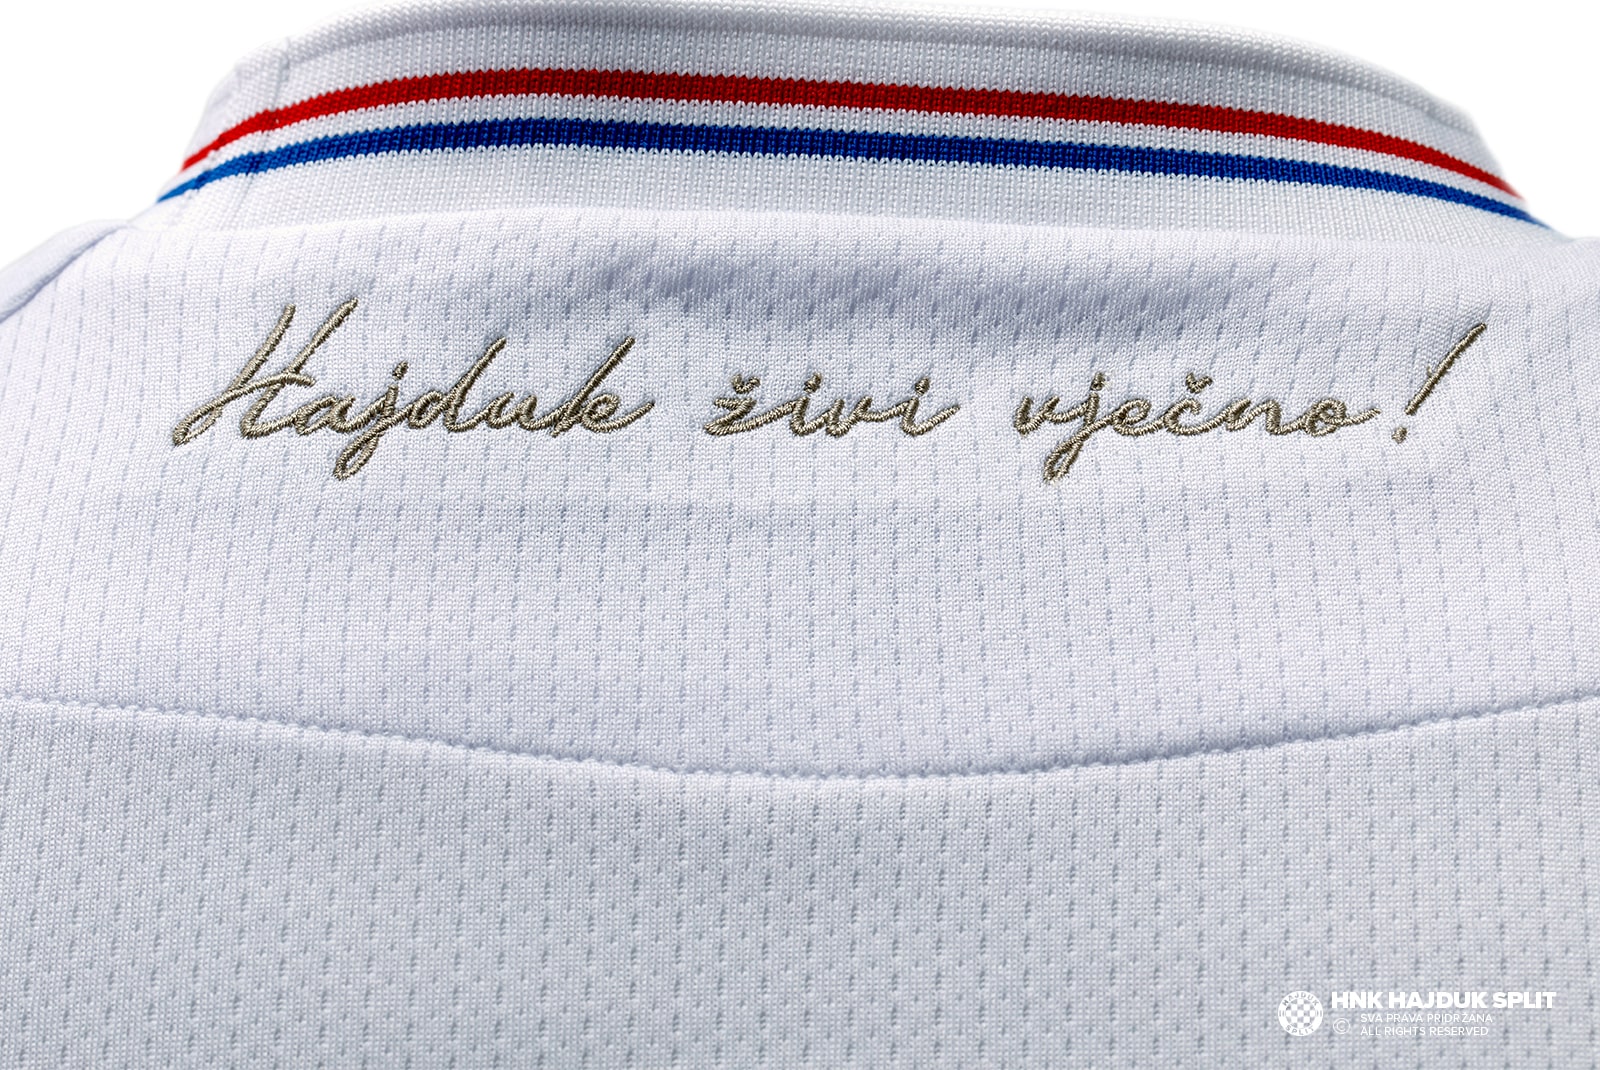 HNK Hajduk Split  Rebranding By @rofe_dsgn